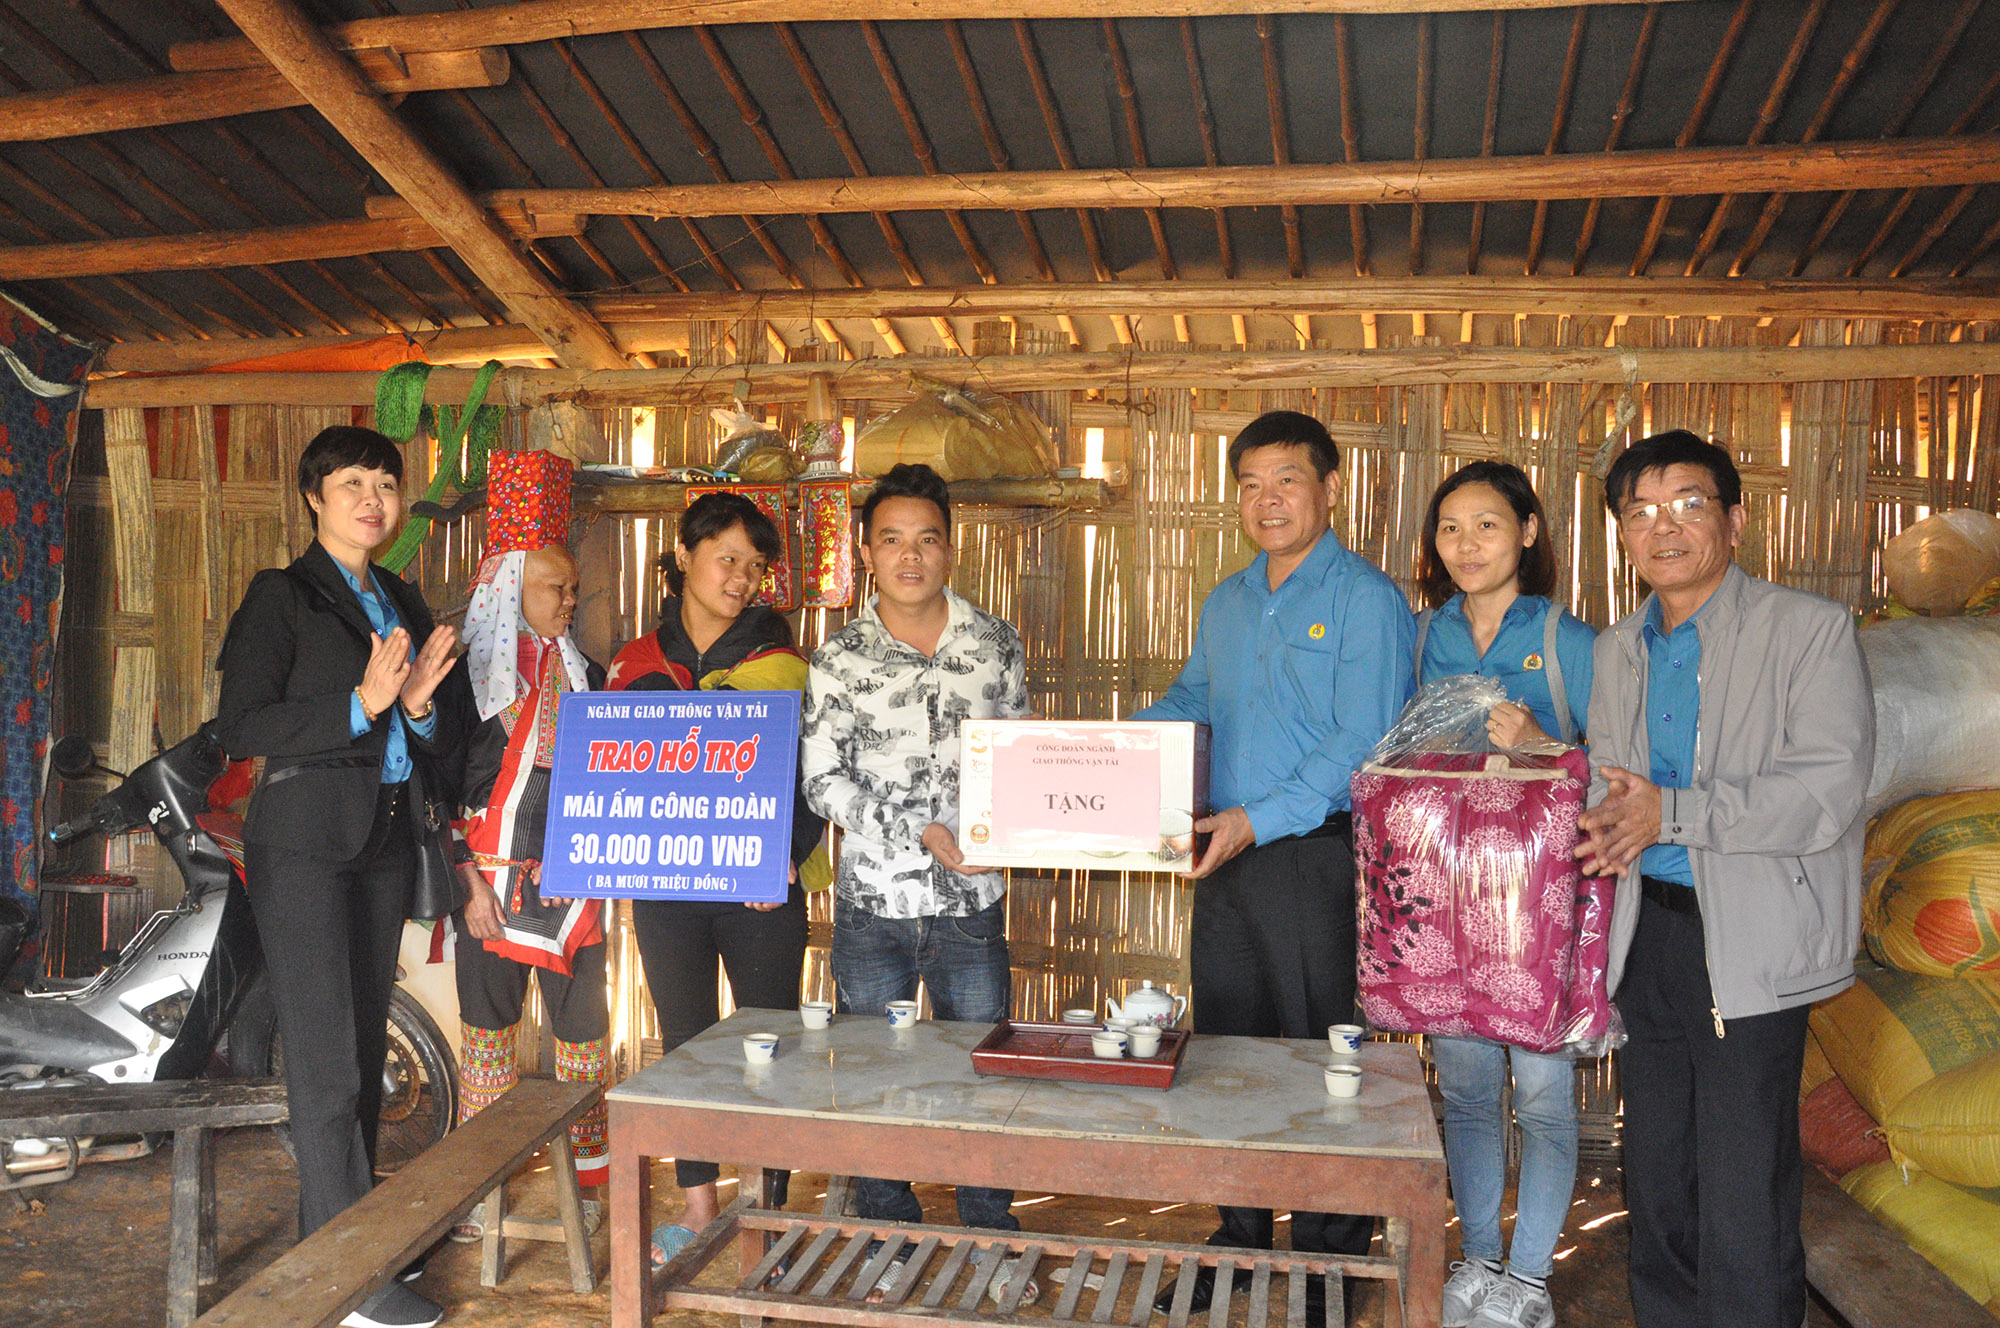 Niềm vui đến trước thềm xuân mới khi gia đình anh Dương Cắm Hếnh vừa được Công đoàn ngành GTVT trao hỗ trợ xây mái ấm công đoàn.